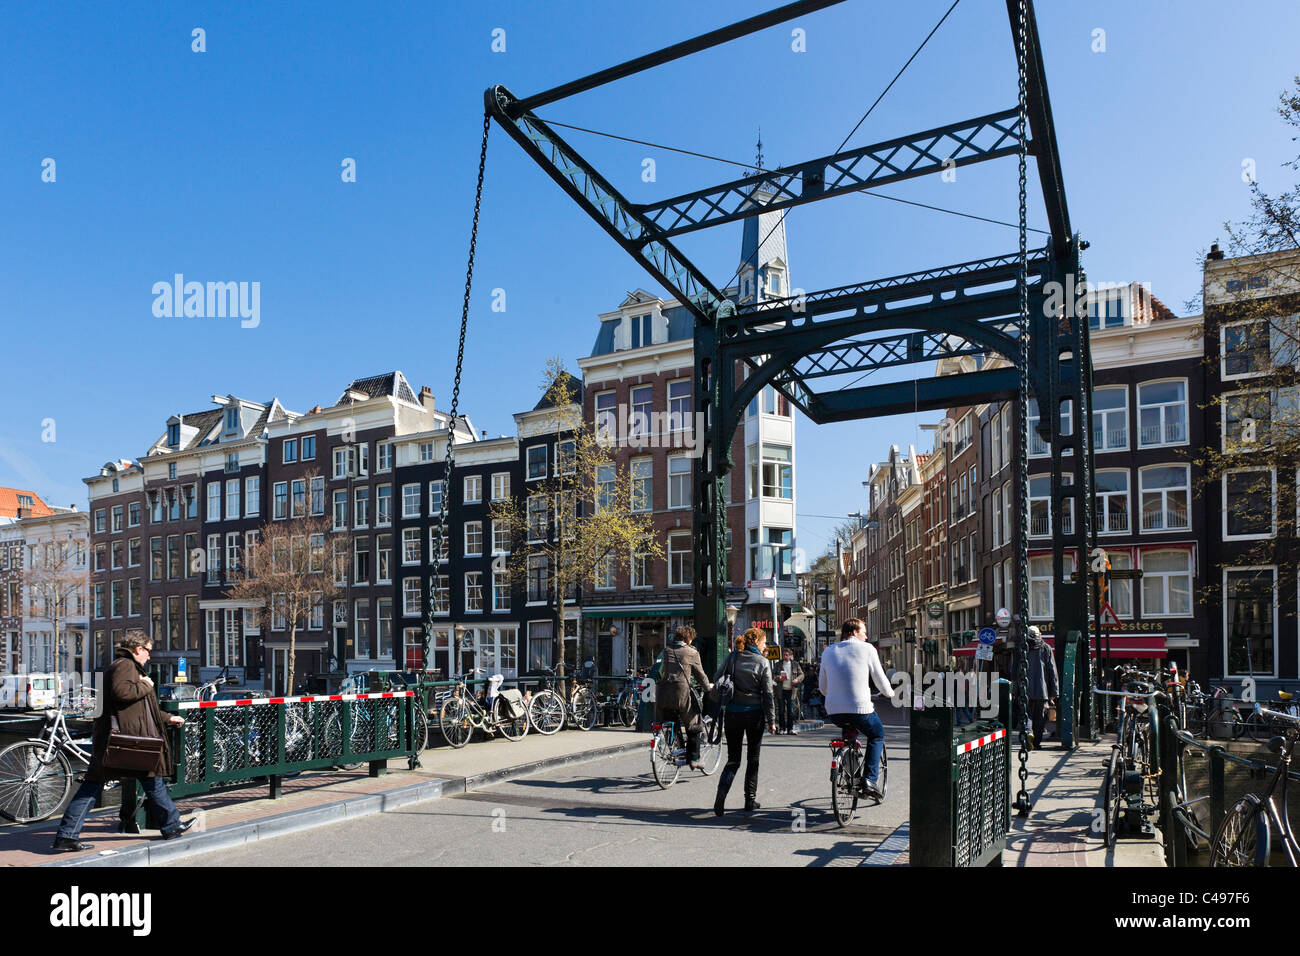 Pont sur le canal Kloveniersburgwal à la fin de Febo dans le centre-ville, Amsterdam, Pays-Bas Banque D'Images